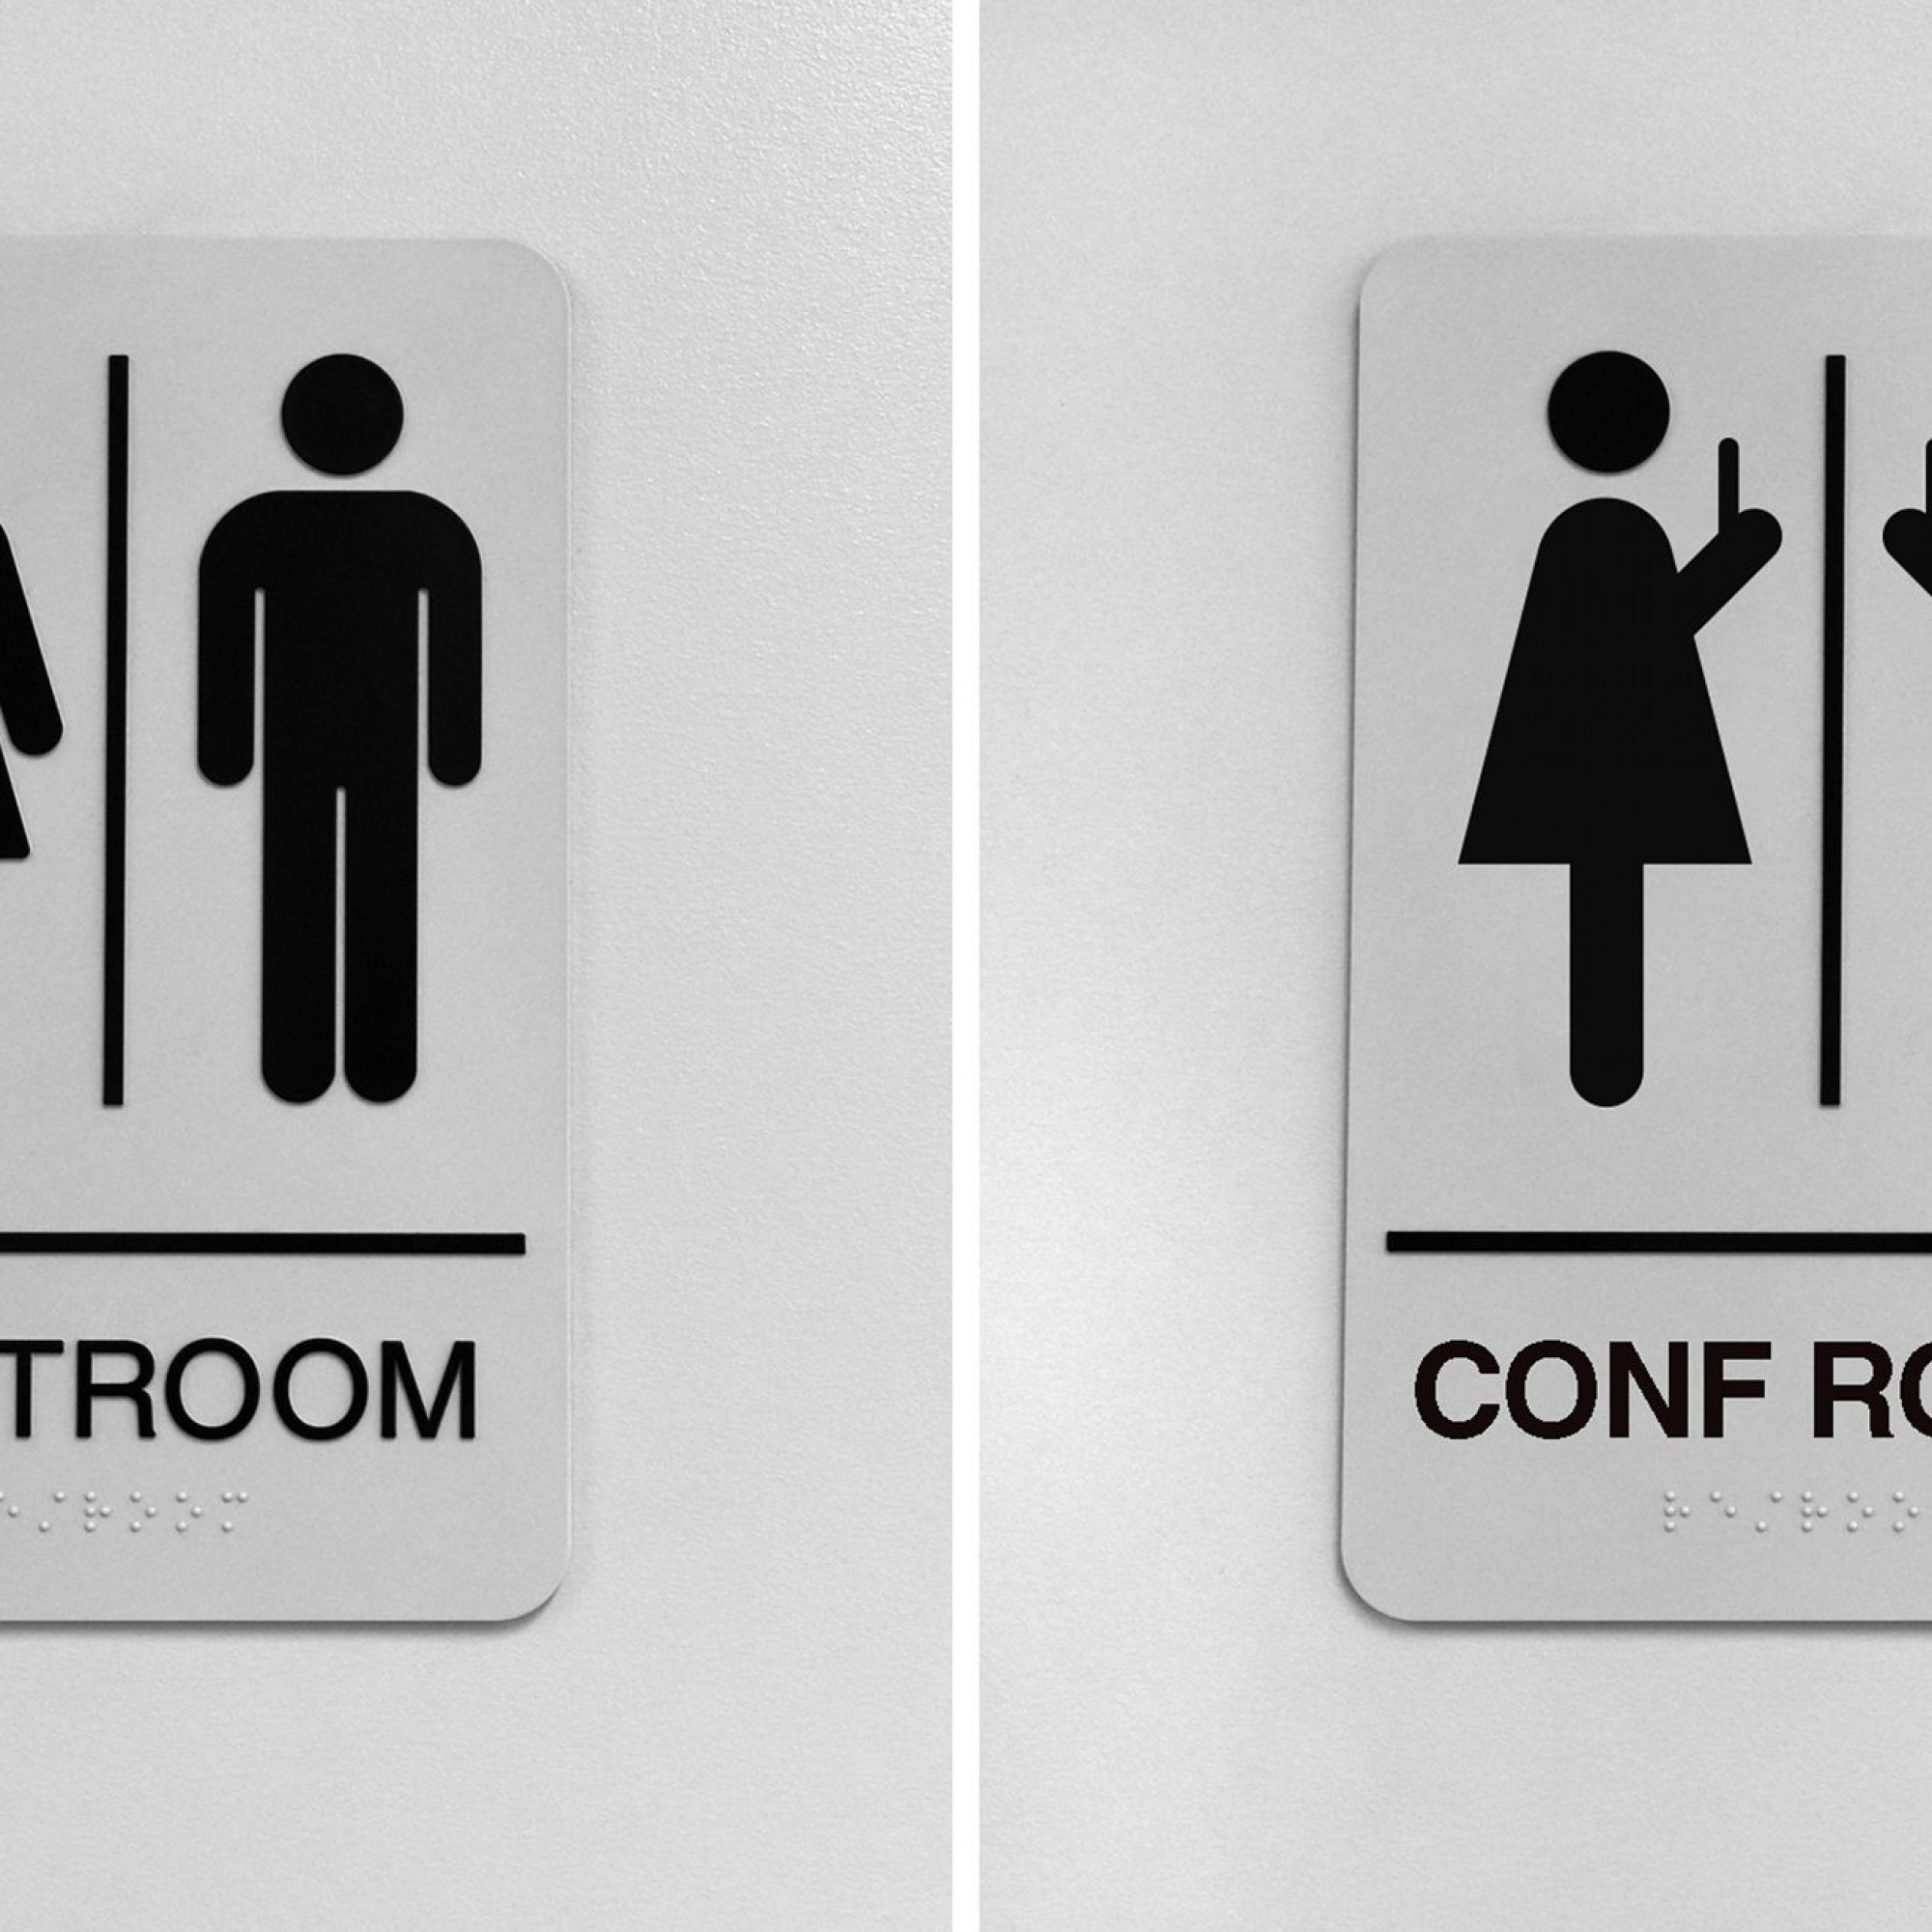 Strassentafel, einmal vor (Toilette) und einmal während der Coronapedemie (Konferenz-Raum).